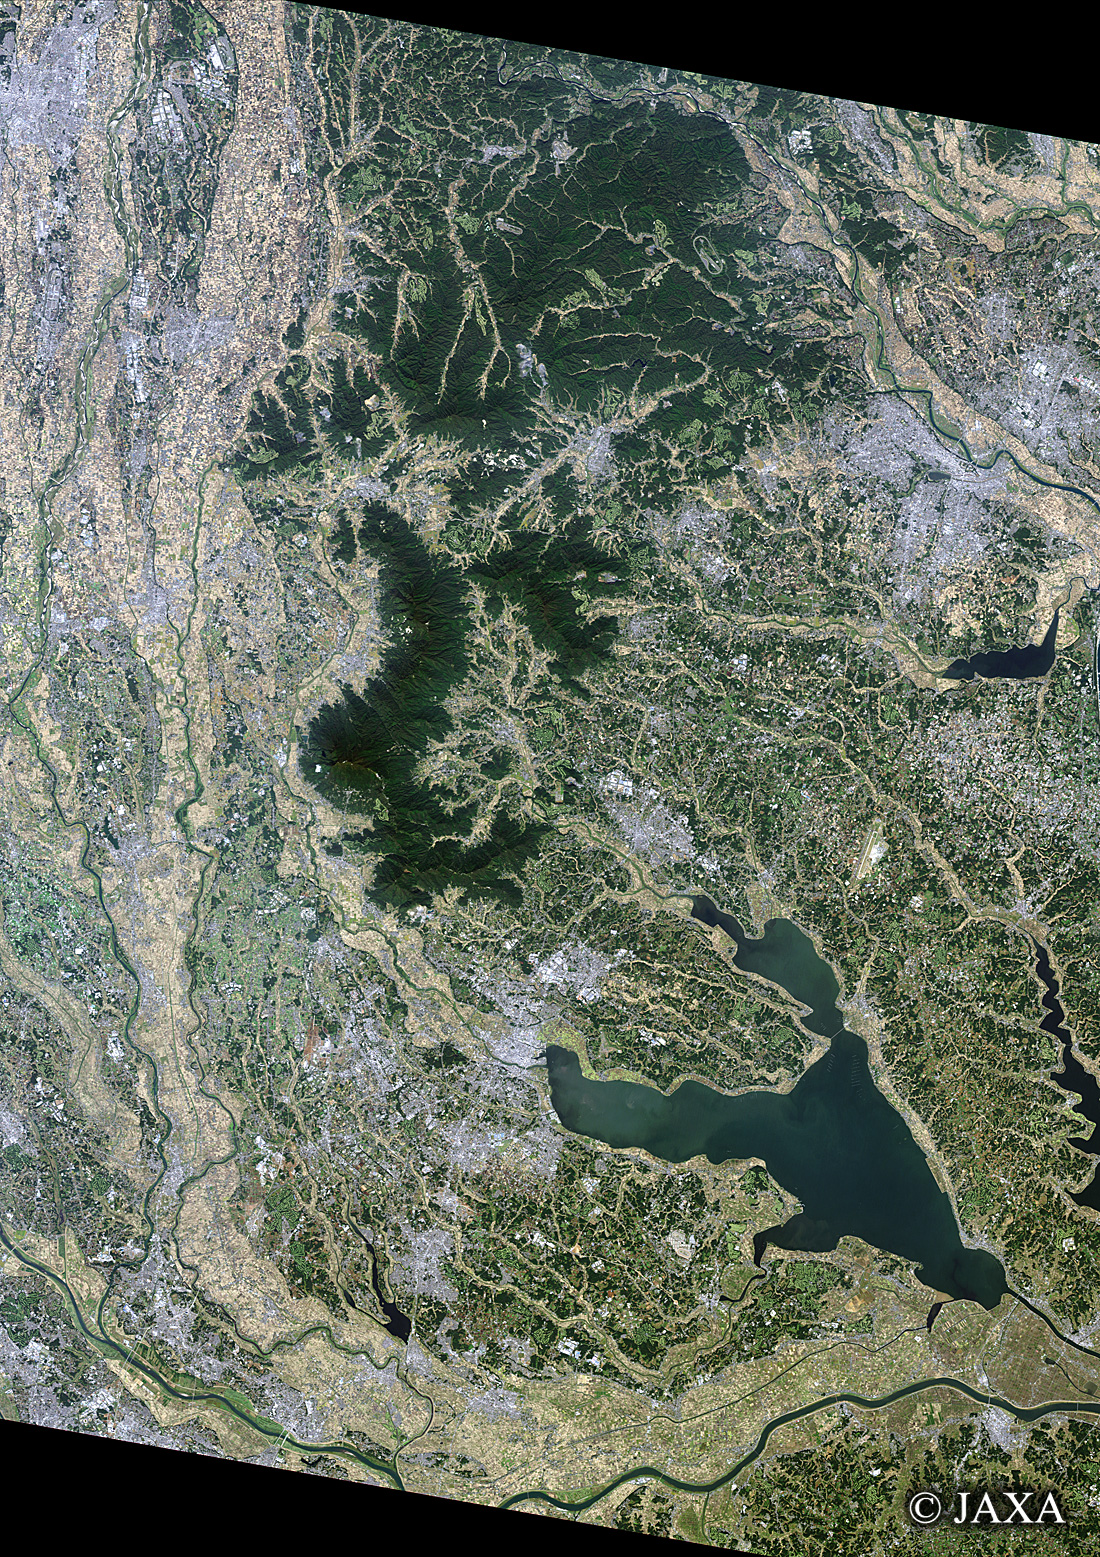 だいちから見た日本の都市 桜川流域:衛星画像